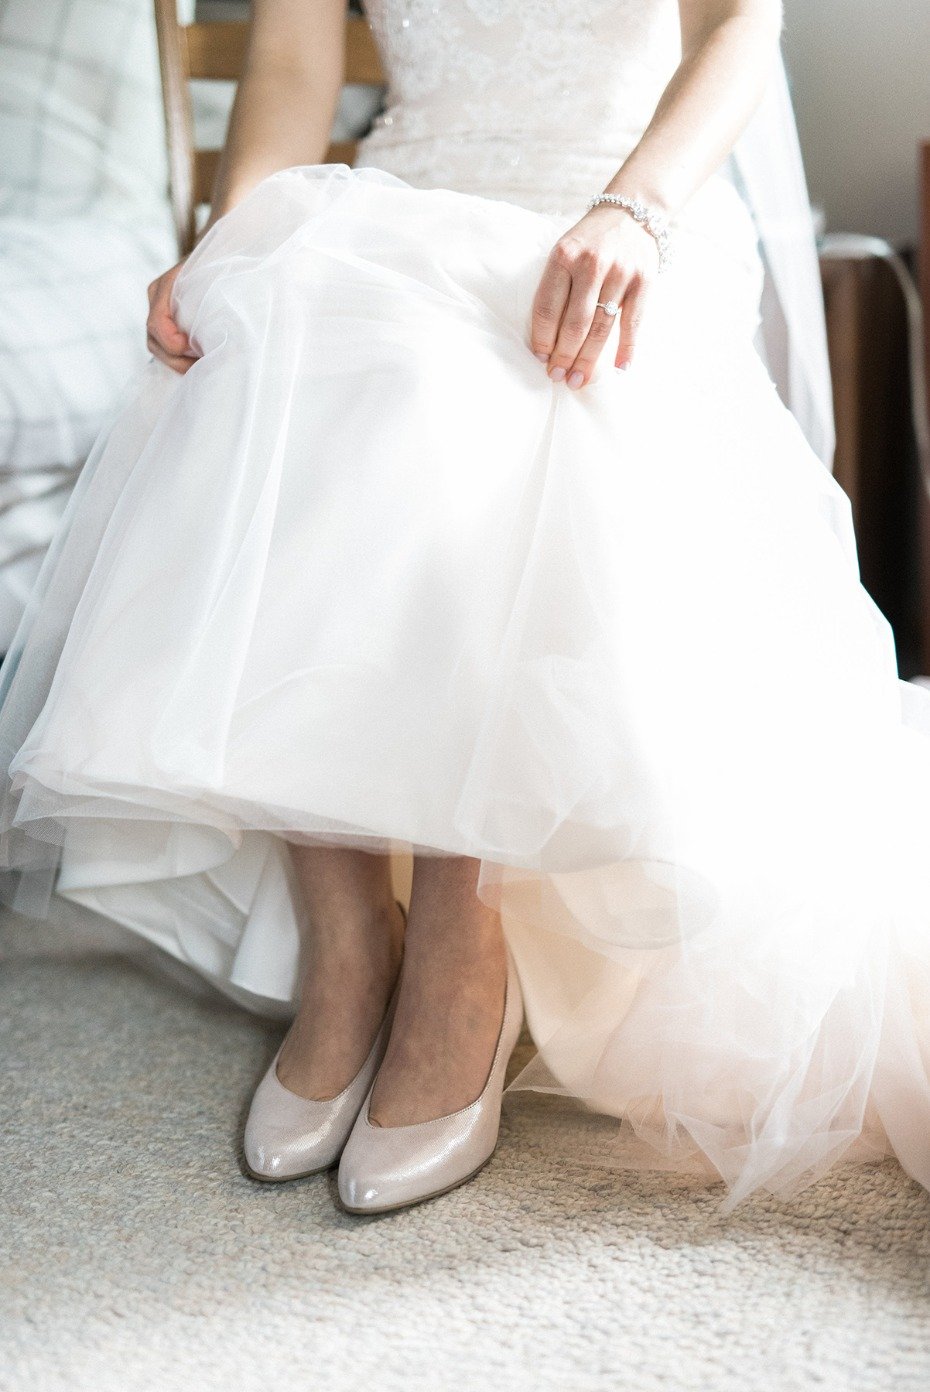 Simple wedding heels